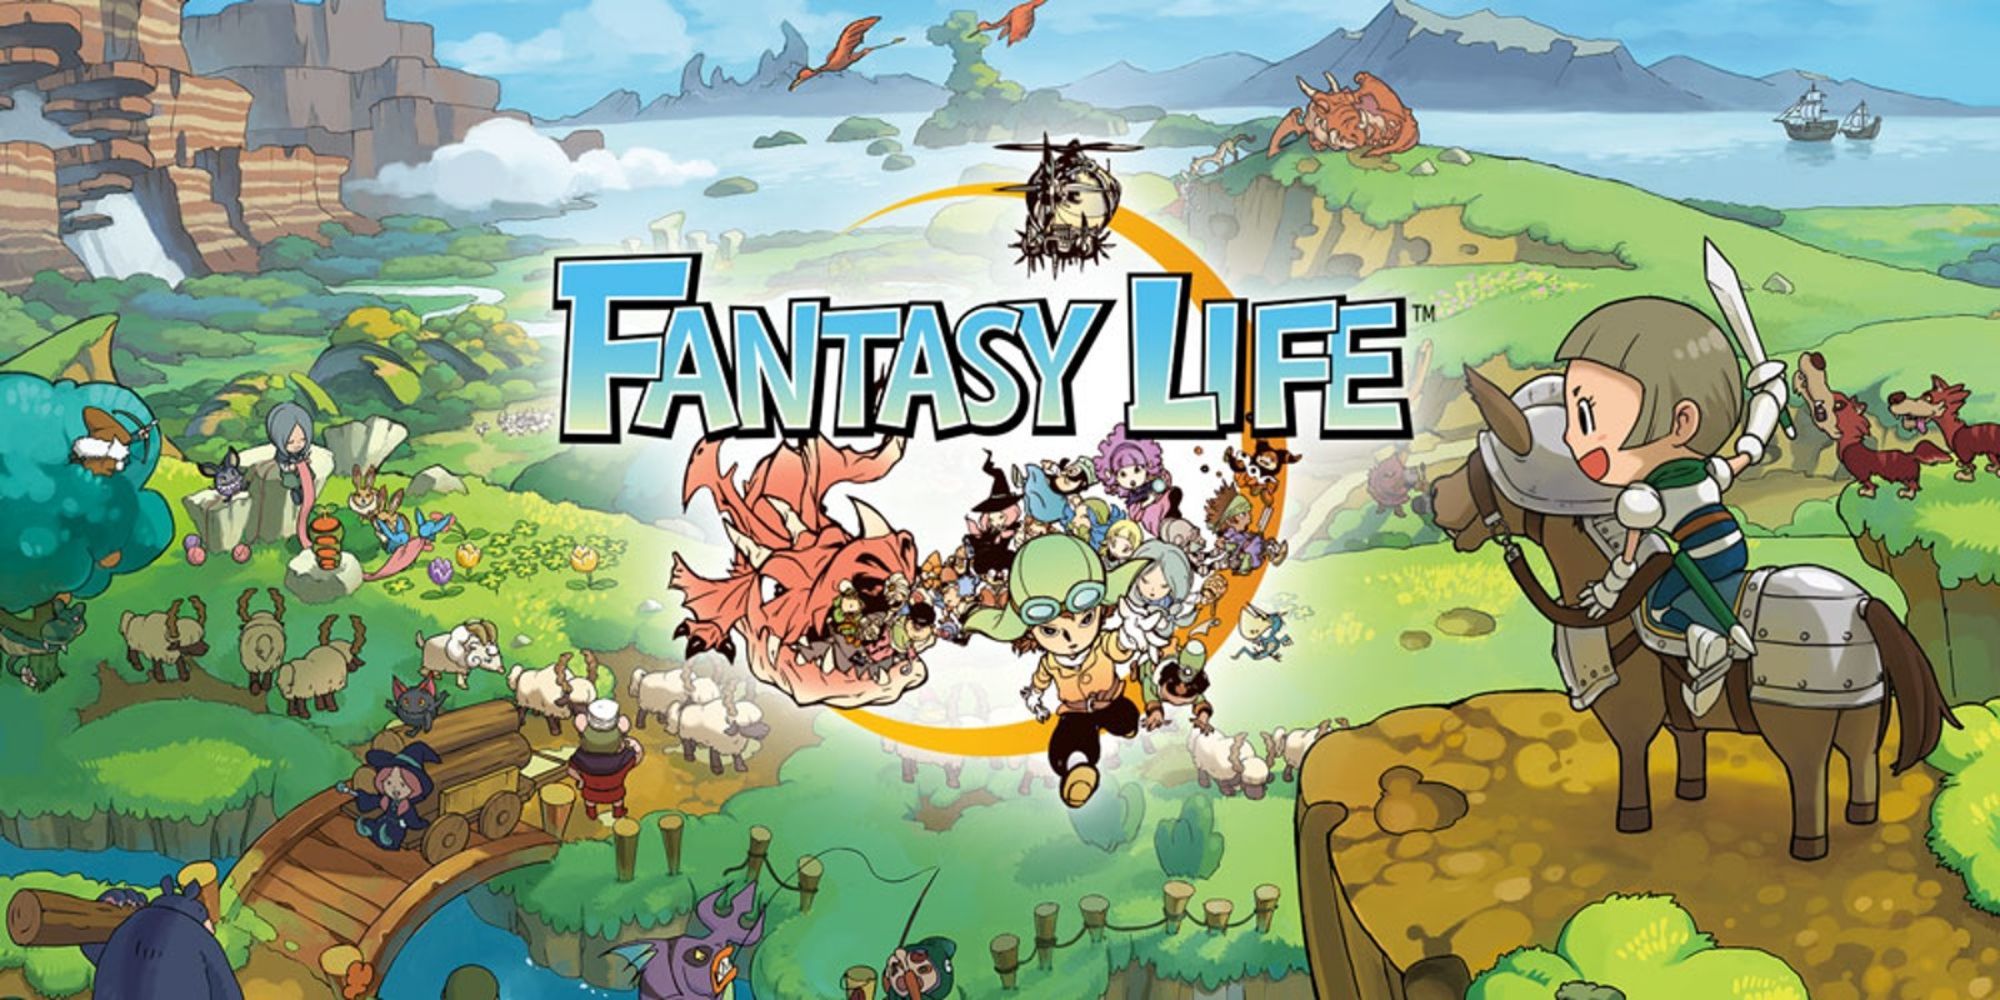 Fantasy Life Official Artwork For Nintendo 3DS